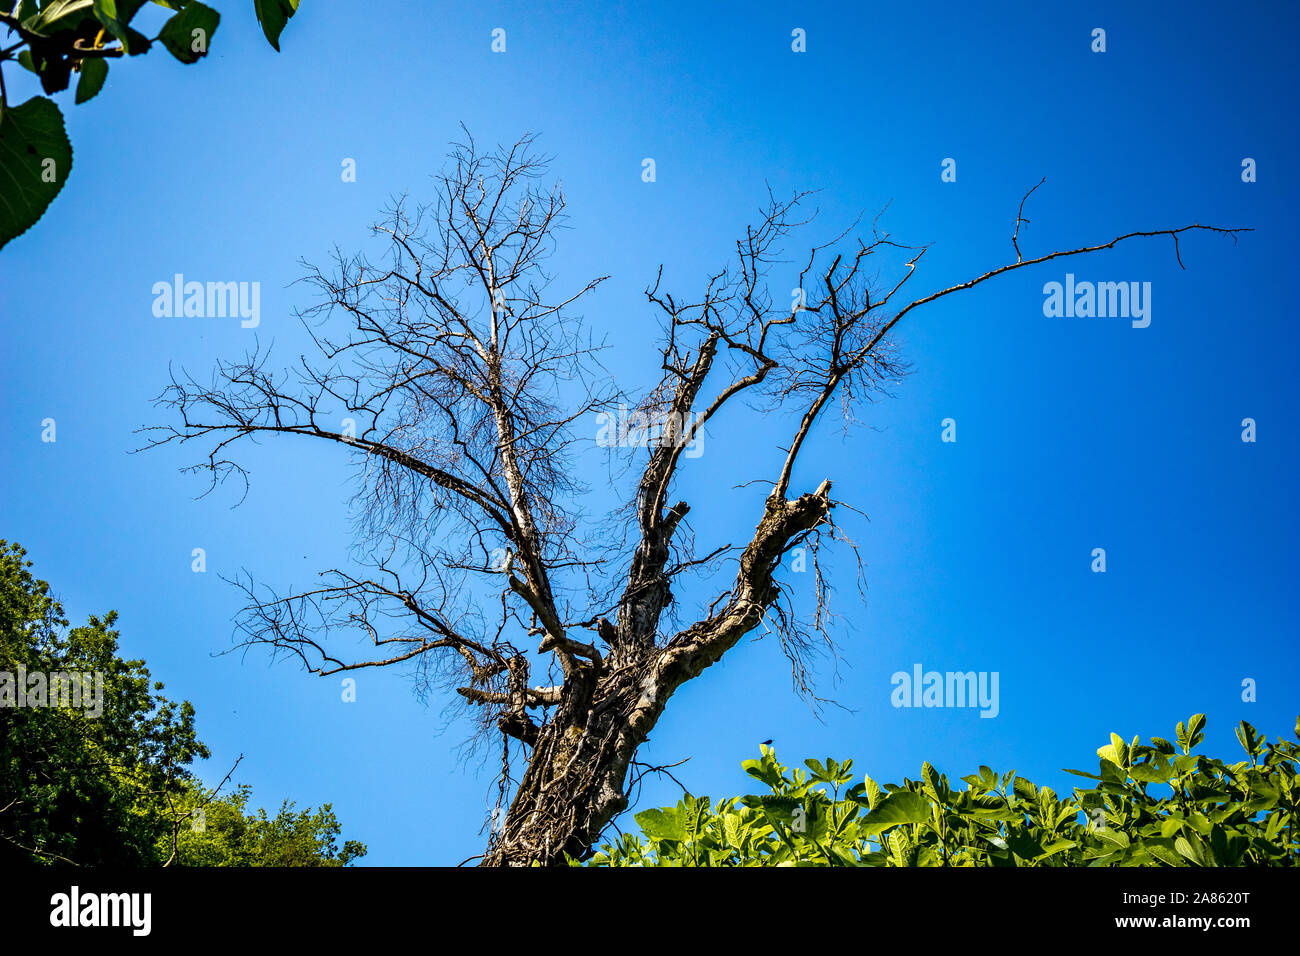 Trockener Baum in einem grünen Frühling Wald mit üppigen grünen Bäume auf blauen Himmel Hintergrund. Klimawandel, Trockenheit und der Tod, das Sterben der Natur Konzept, Berg in Albanien, sonniger Frühlingstag Stockfoto